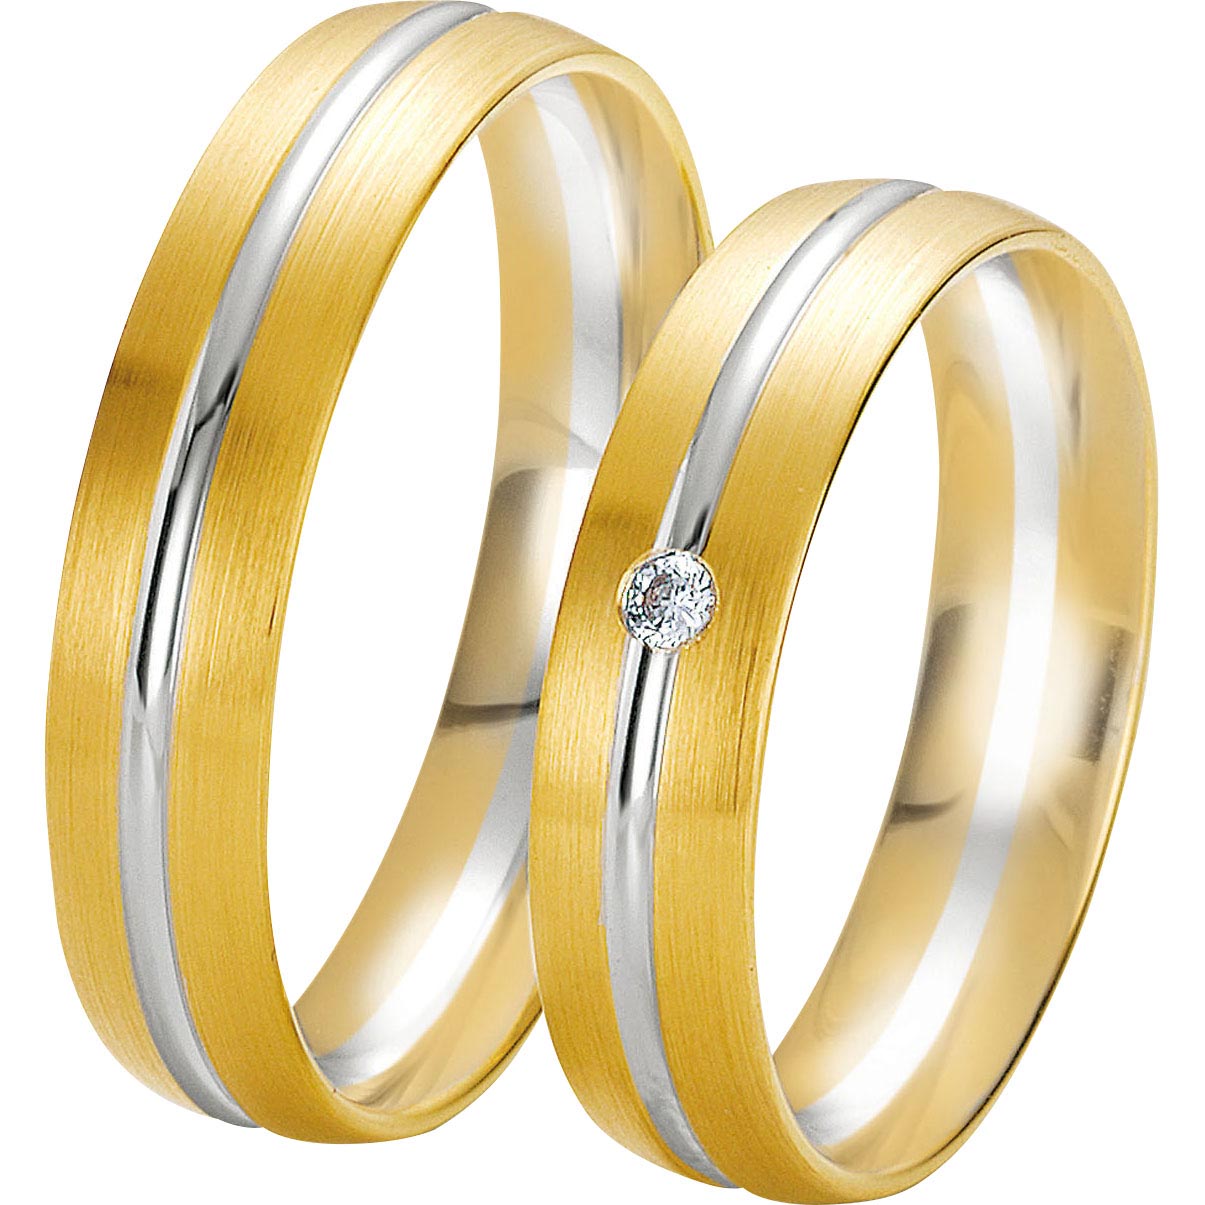 Grosir Cincin emas yang dibuat khusus Grosir Fine & OEM/ODM Perhiasan produsen sumber perhiasan yang dipersonalisasi